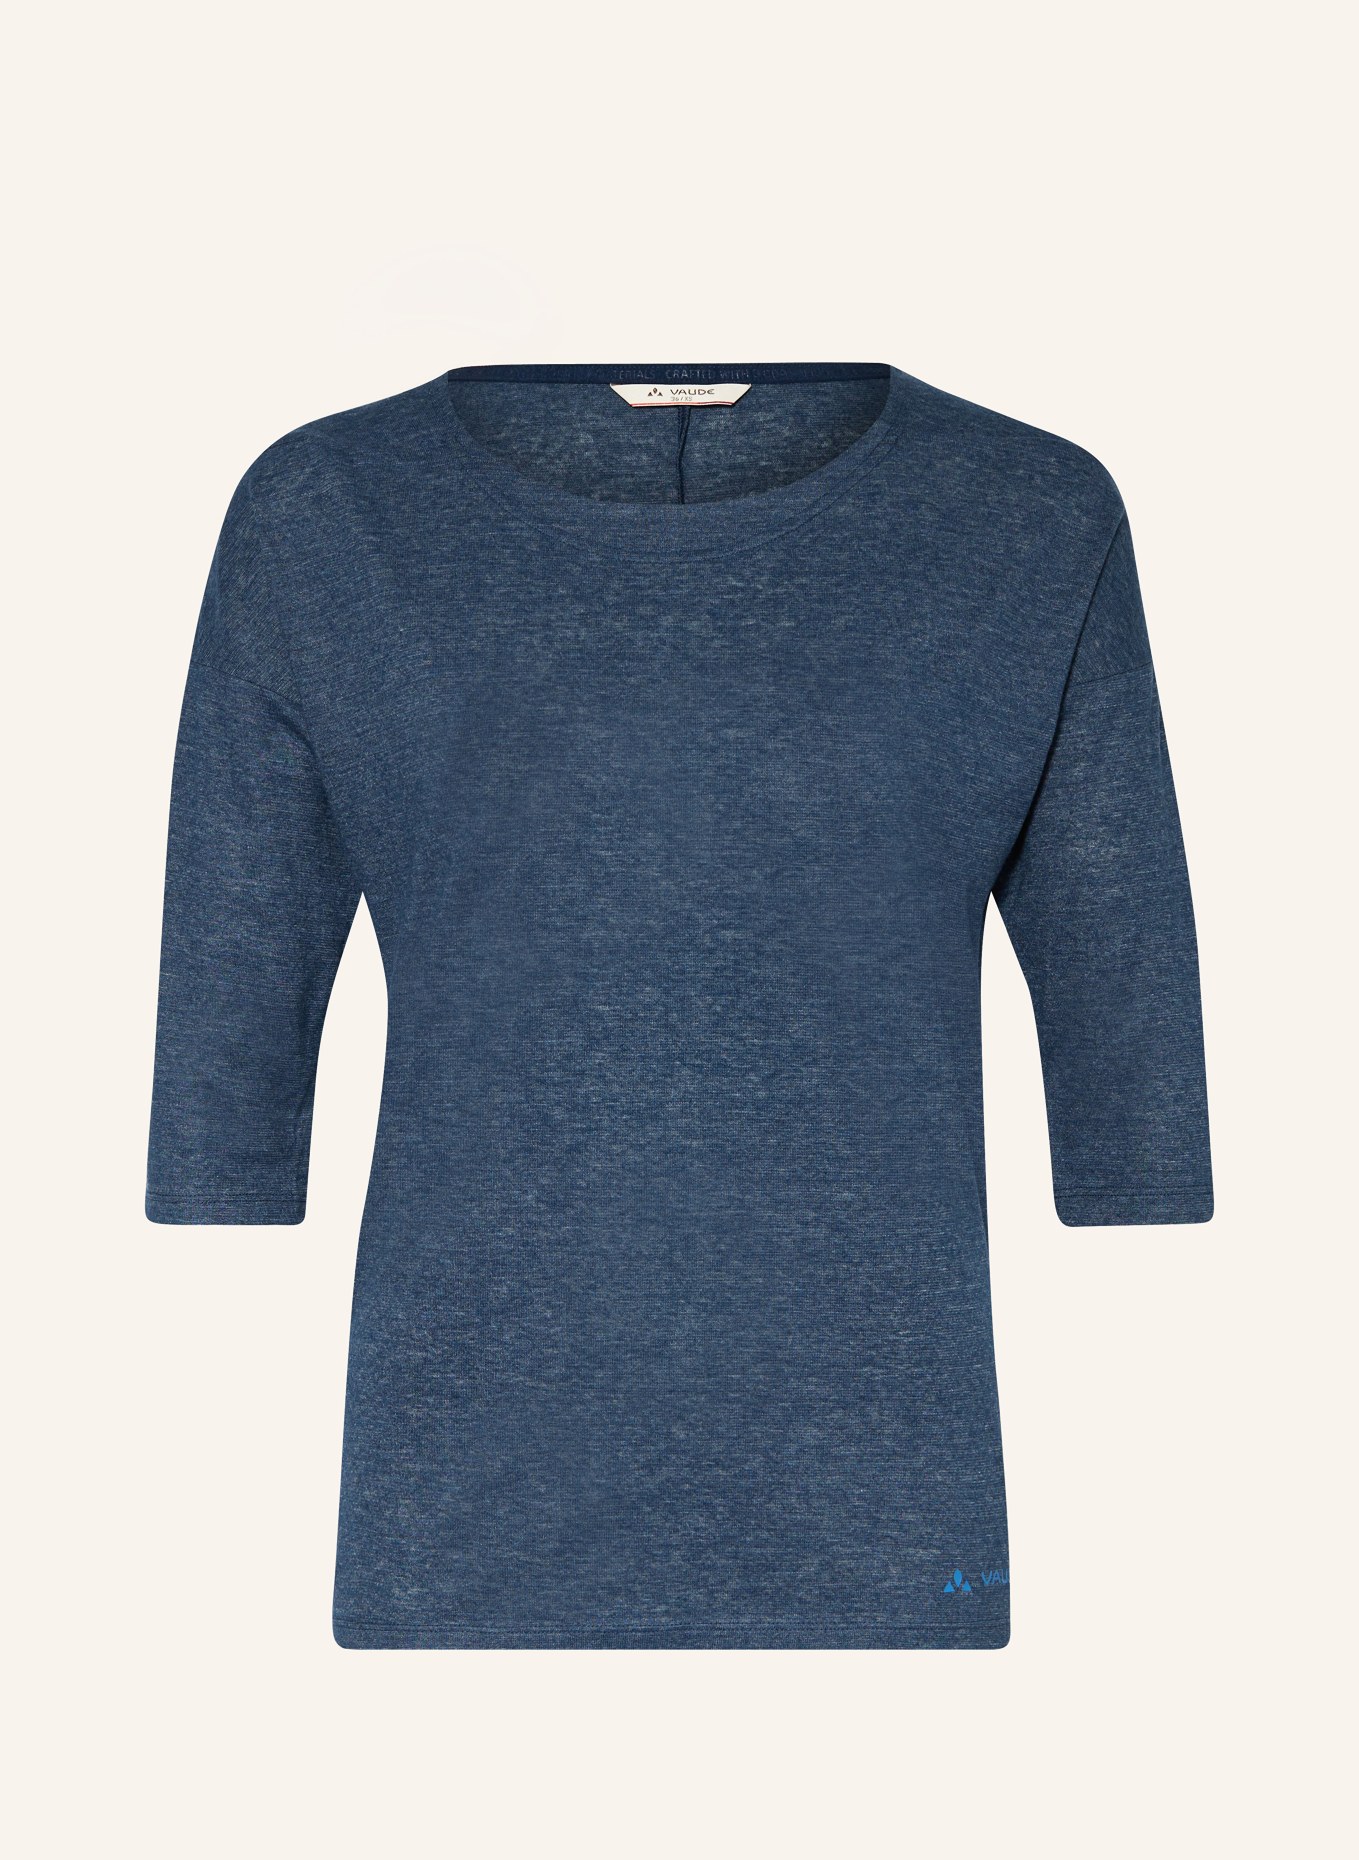 VAUDE T-Shirt NEYLAND mit 3/4-Arm, Farbe: DUNKELBLAU (Bild 1)